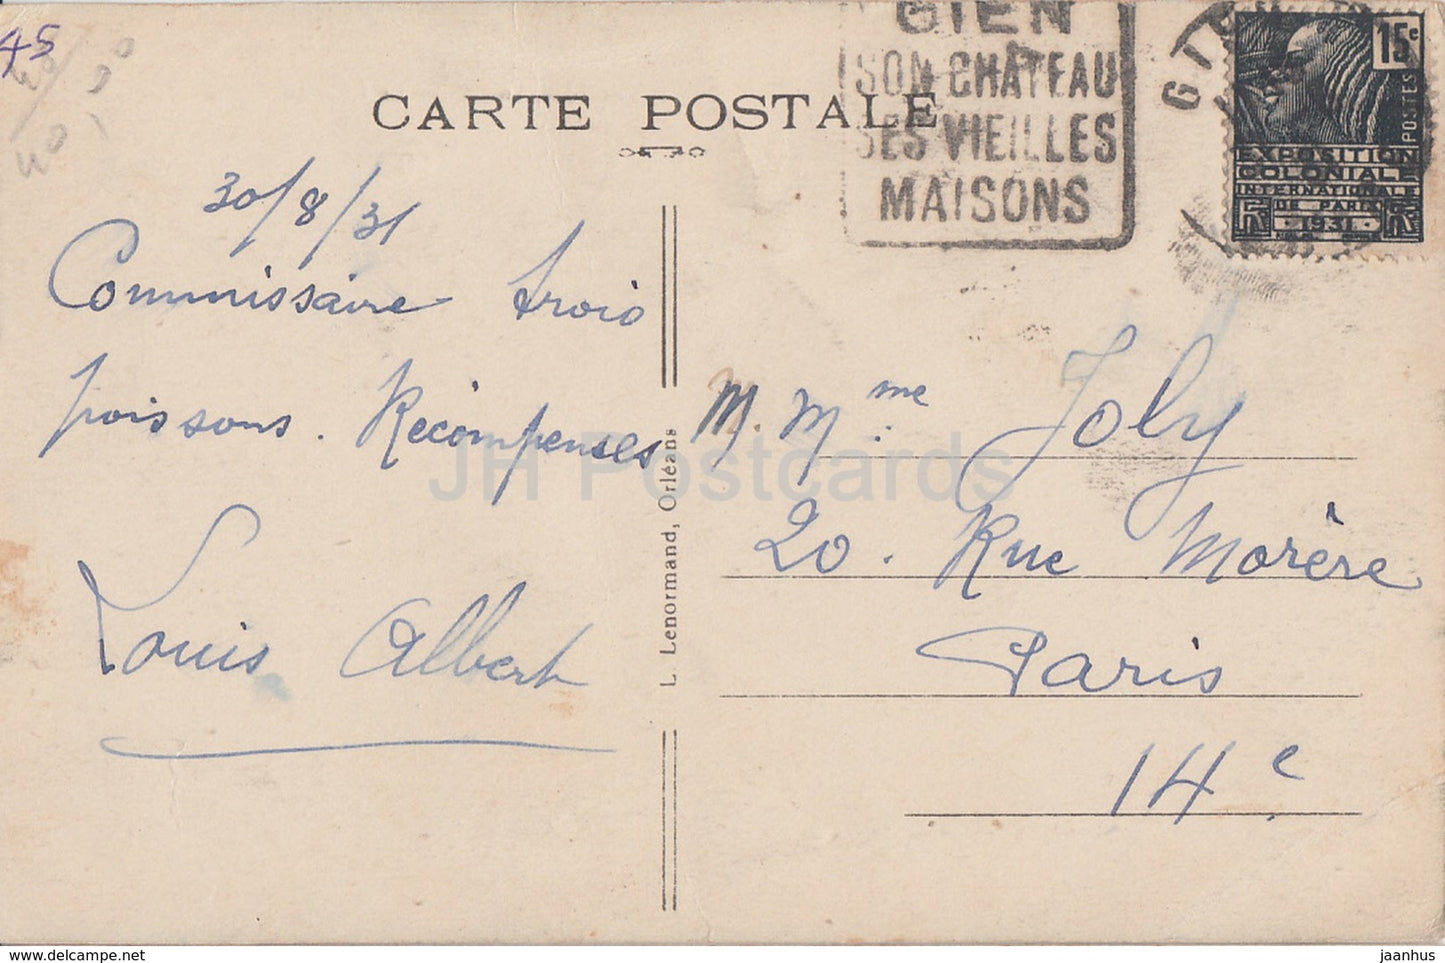 Gien - Le Chateau - château - 3601 - carte postale ancienne - 1931 - France - occasion